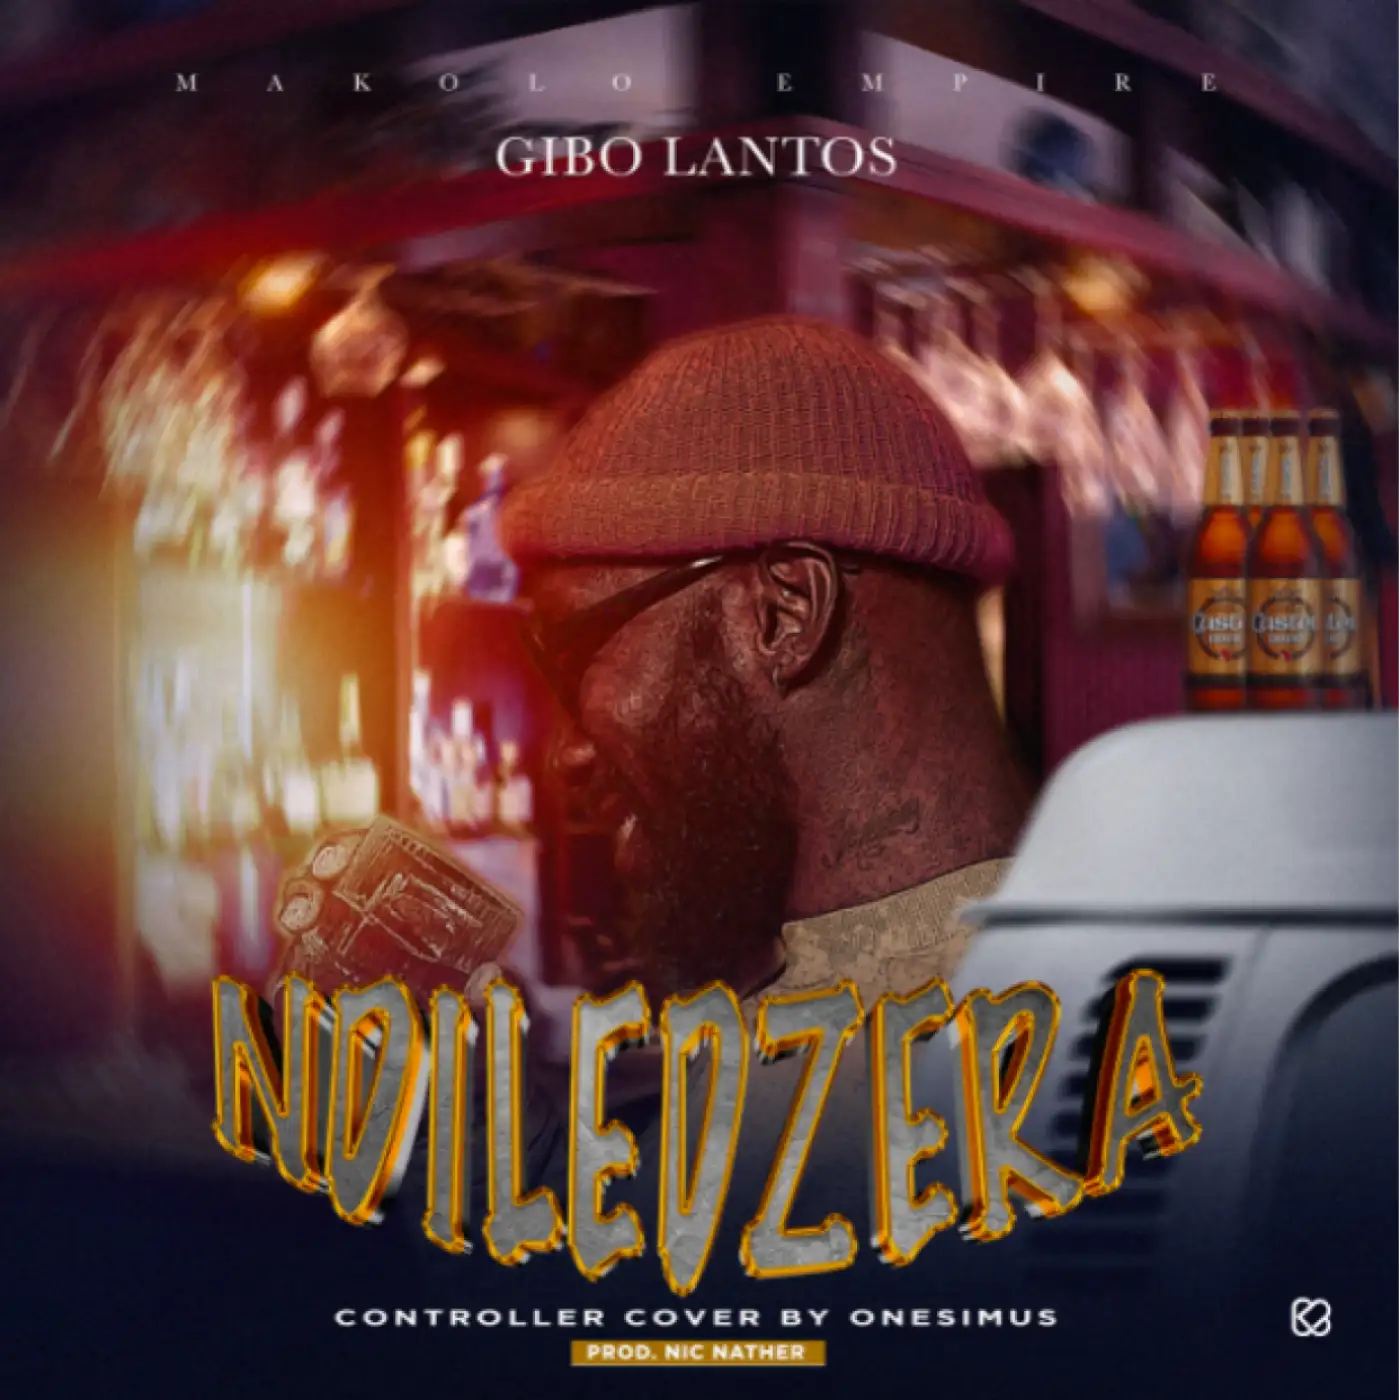 Gibo Lantos-Gibo Lantos - Ndiledzera (Controller Cover)-song artwork cover